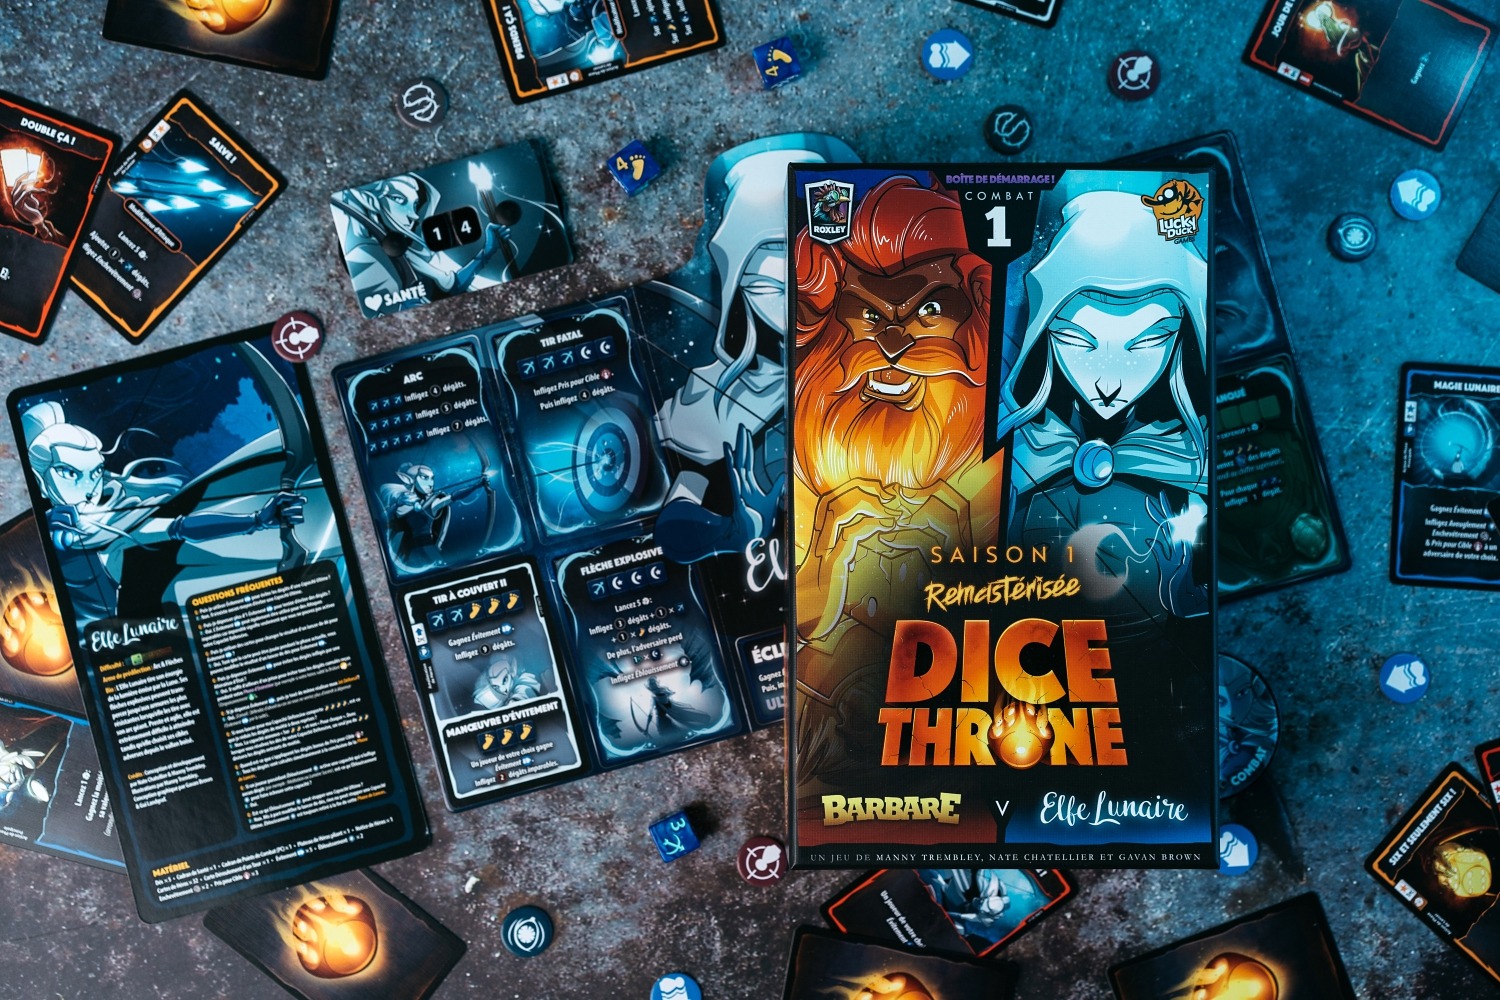 Dice throne saison 1 photo jeu de société boardgame lucky duck games Elfe lunaire